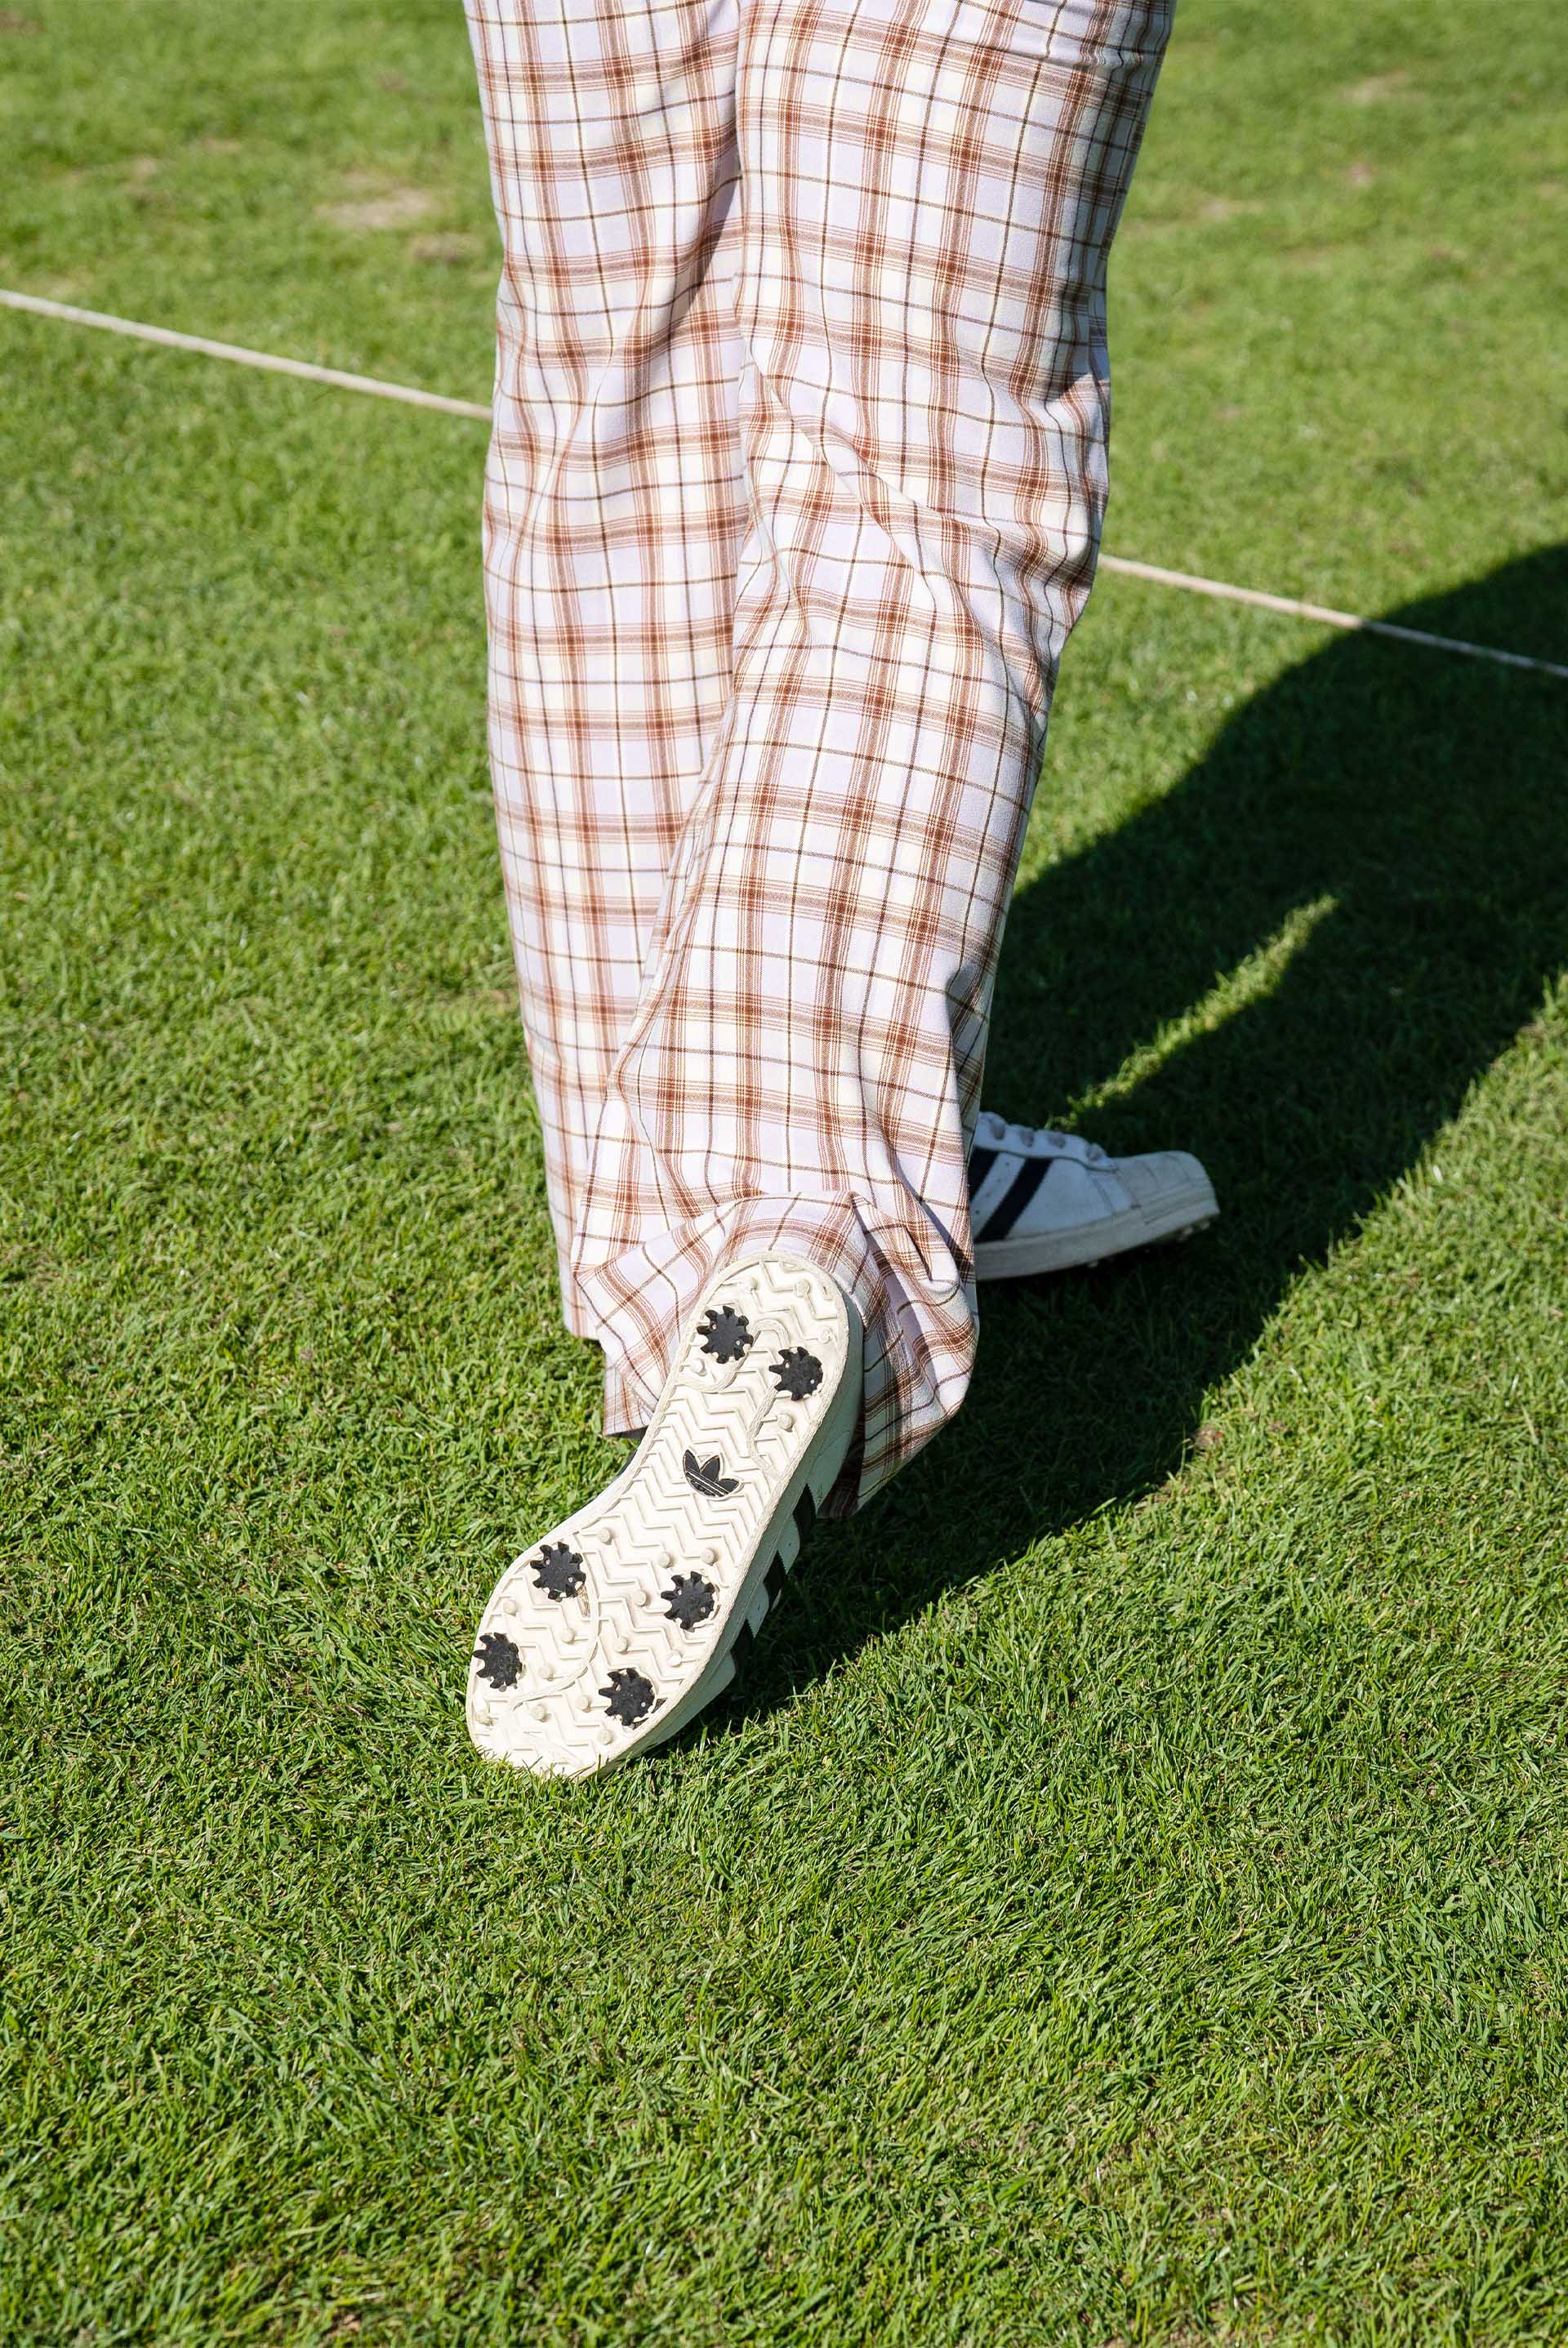 Szczegółowe ujęcie spodni golfowych i tenisówek w kratkę, które Mullins nosi na polu golfowym.